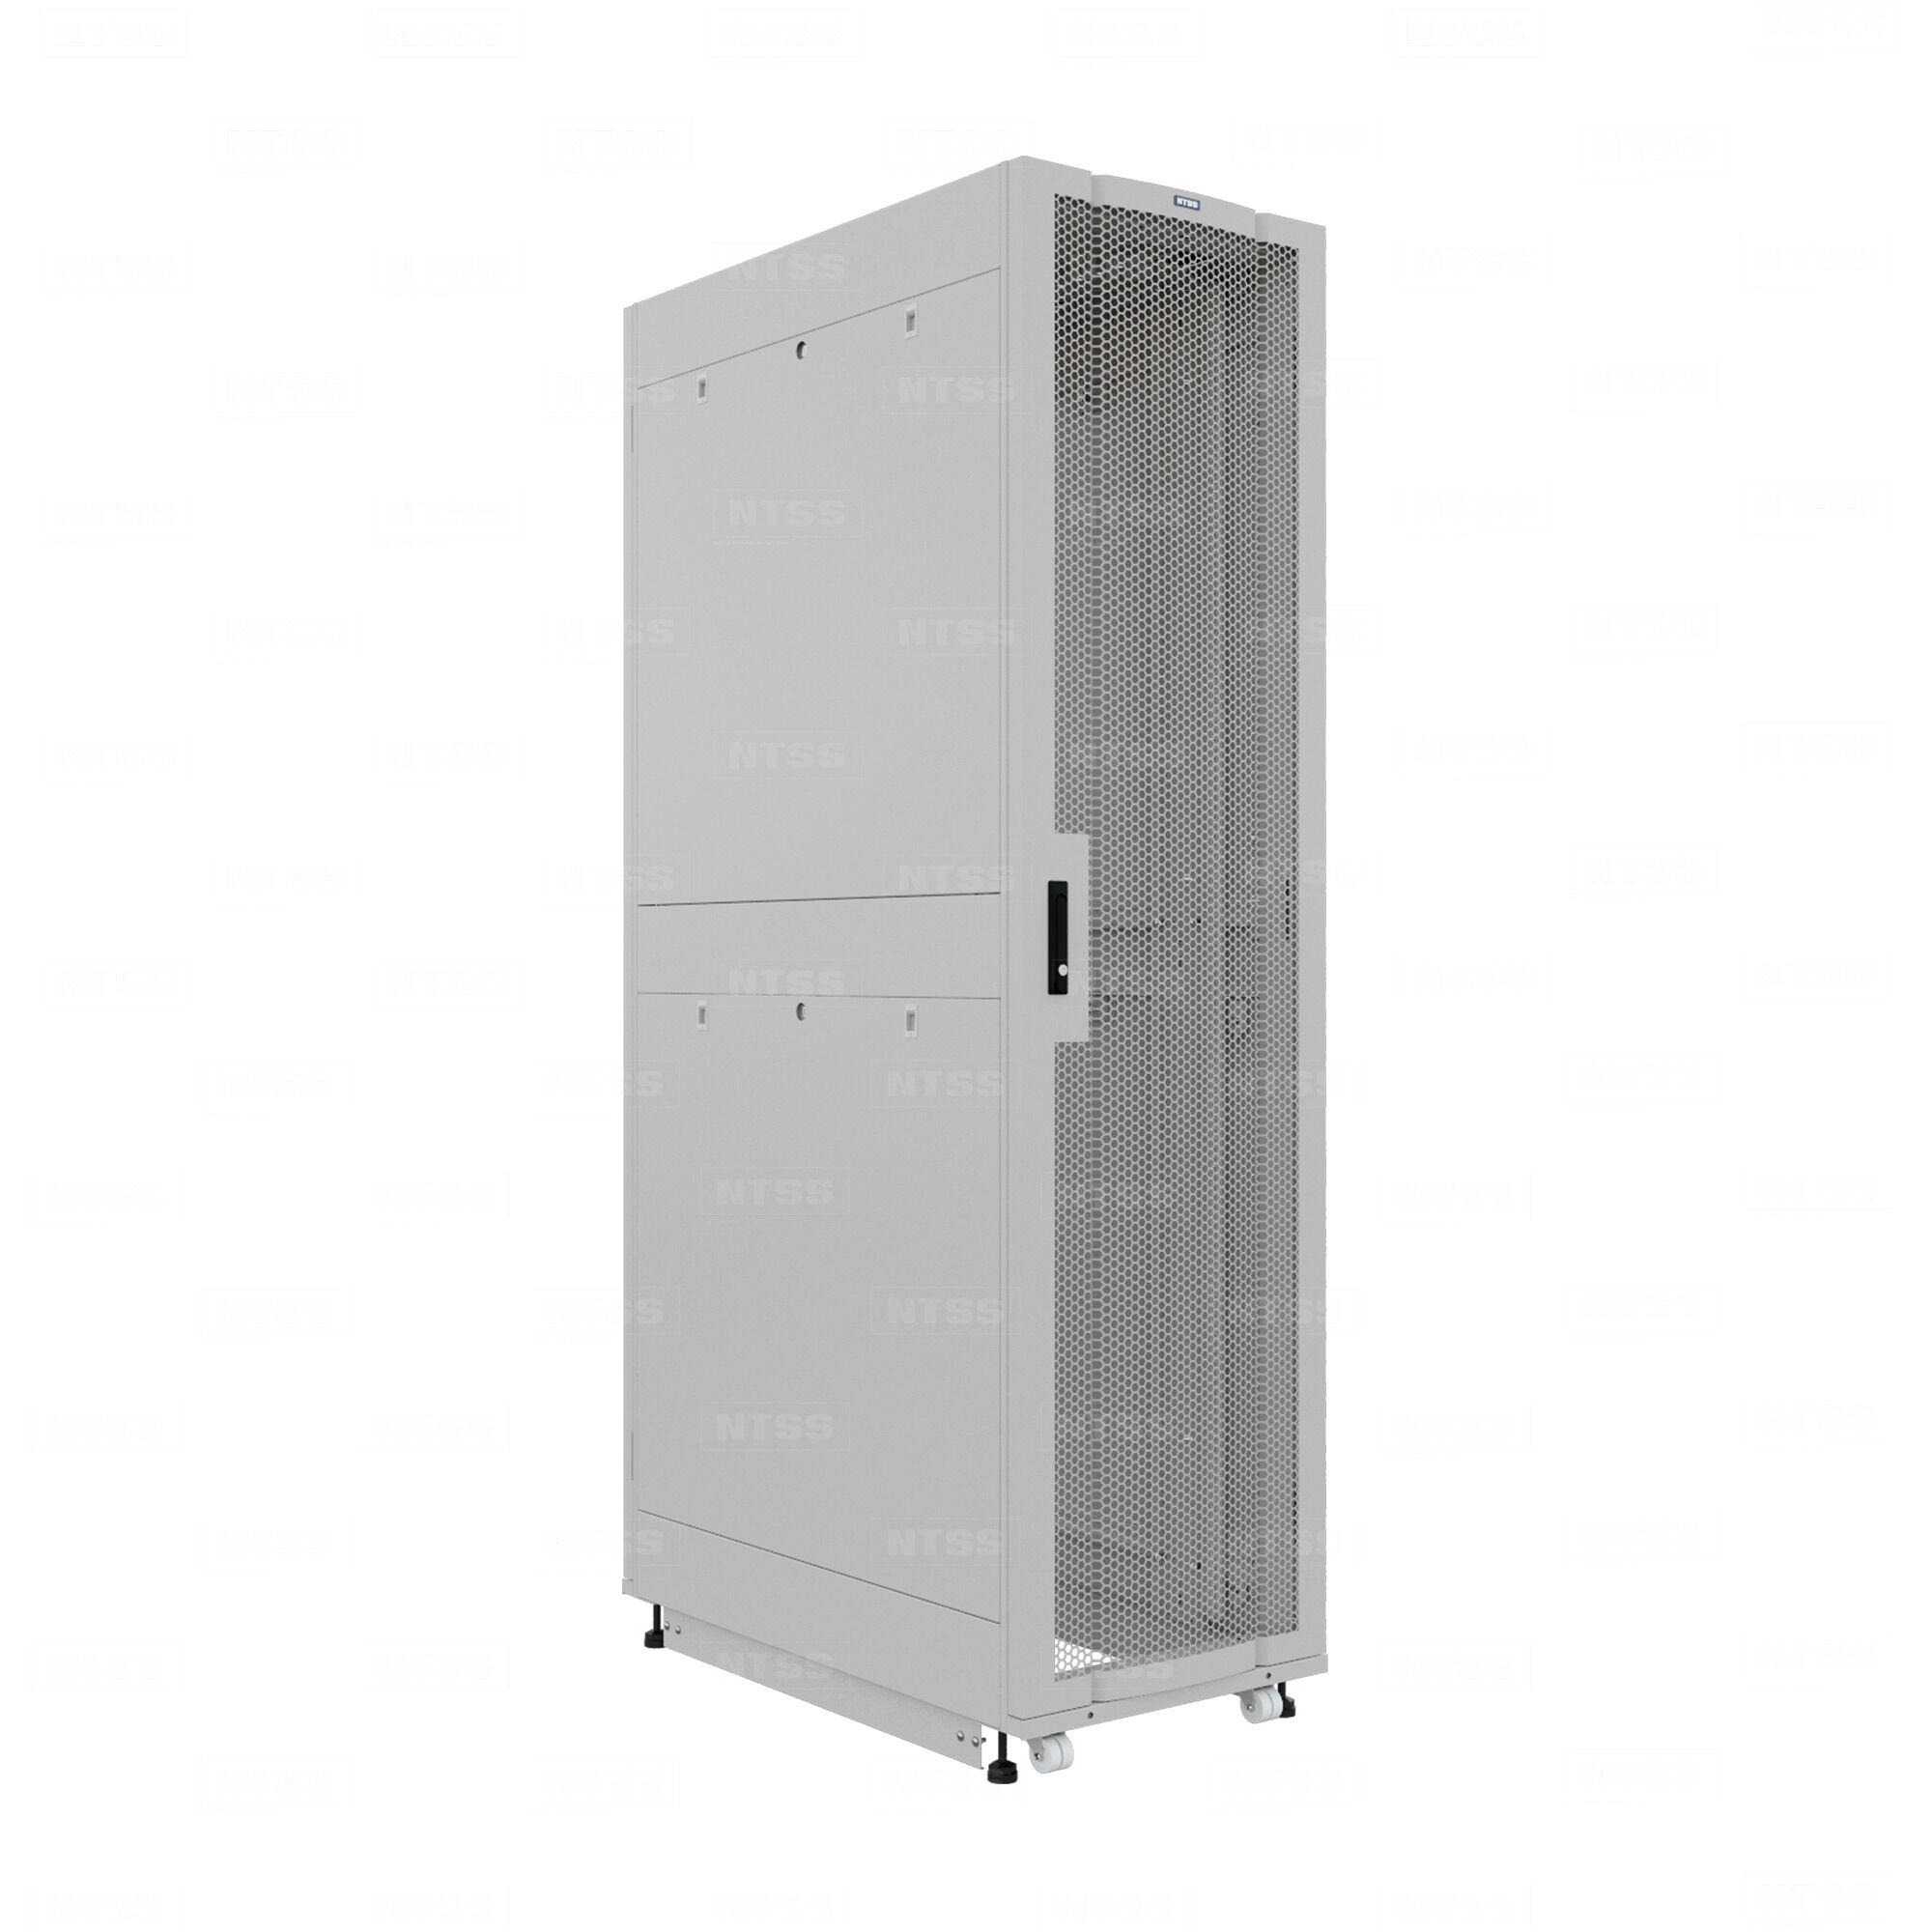 19" Напольный серверный шкаф NTSS ПРОЦОД PC 45U 600х1070 мм, передняя дверь перфорация, задняя дверь распашная двойная п